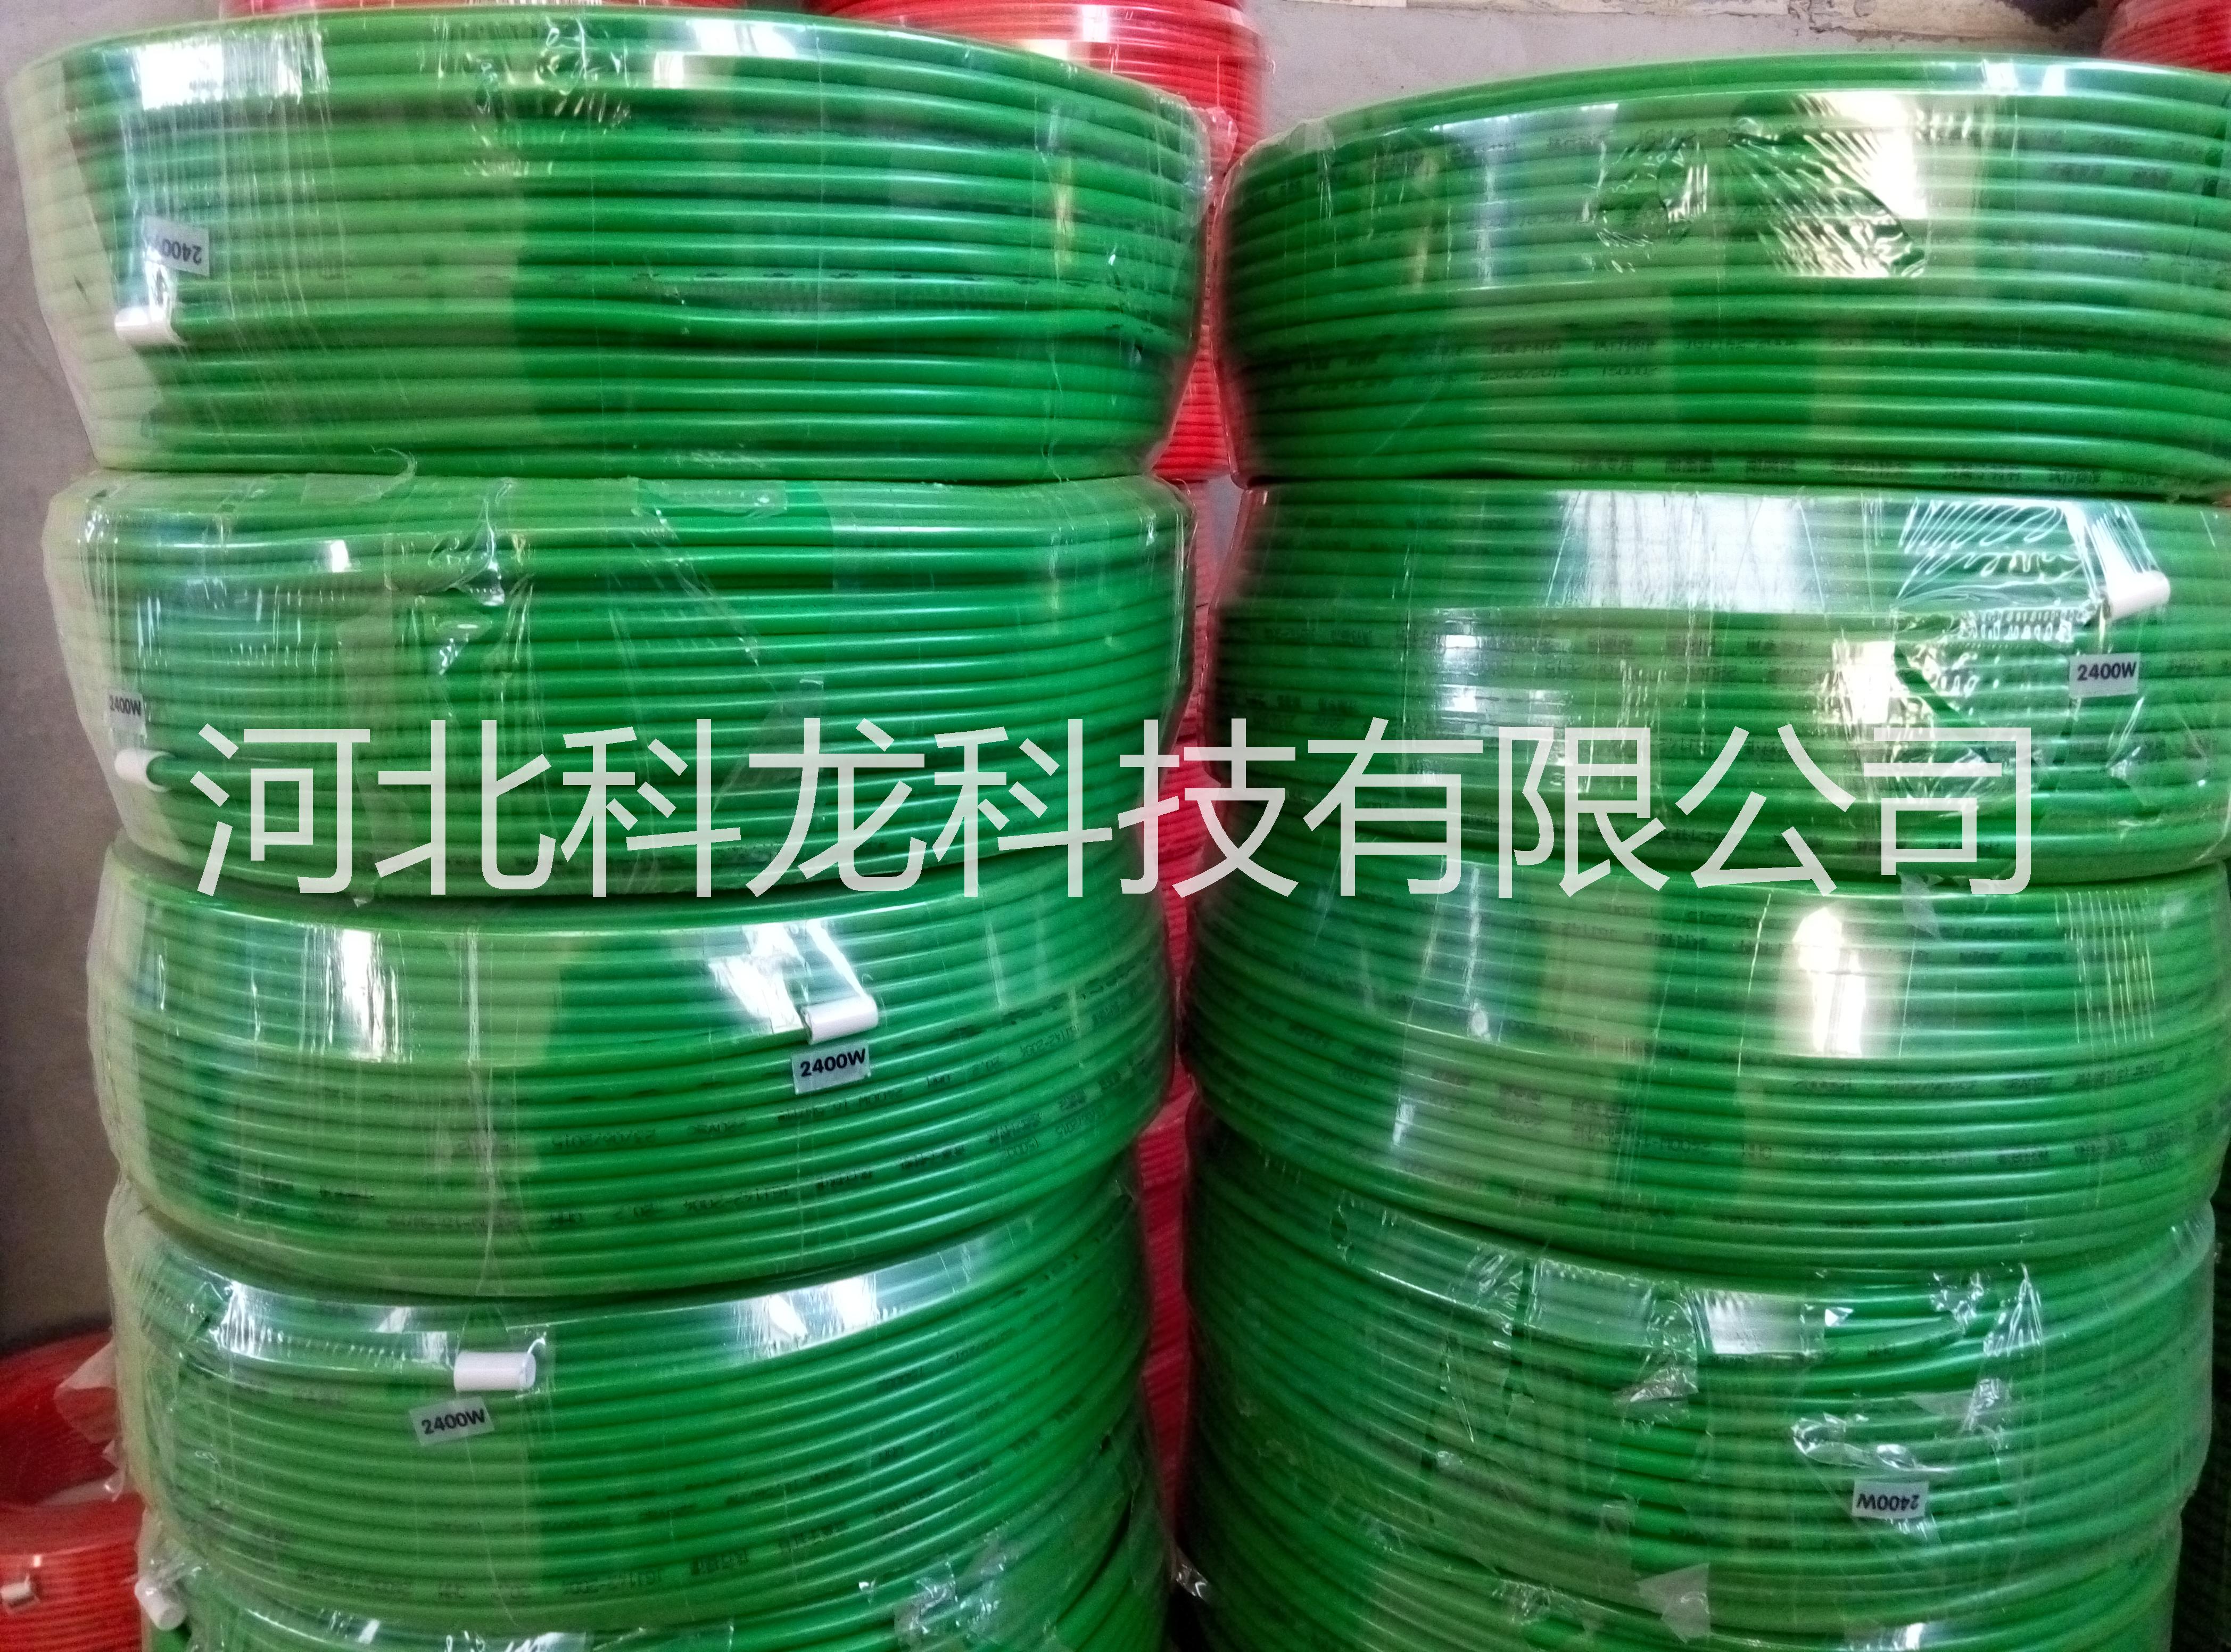 石家庄市陕西加强型碳纤维发热电缆价格厂家供应陕西加强型碳纤维发热电缆价格